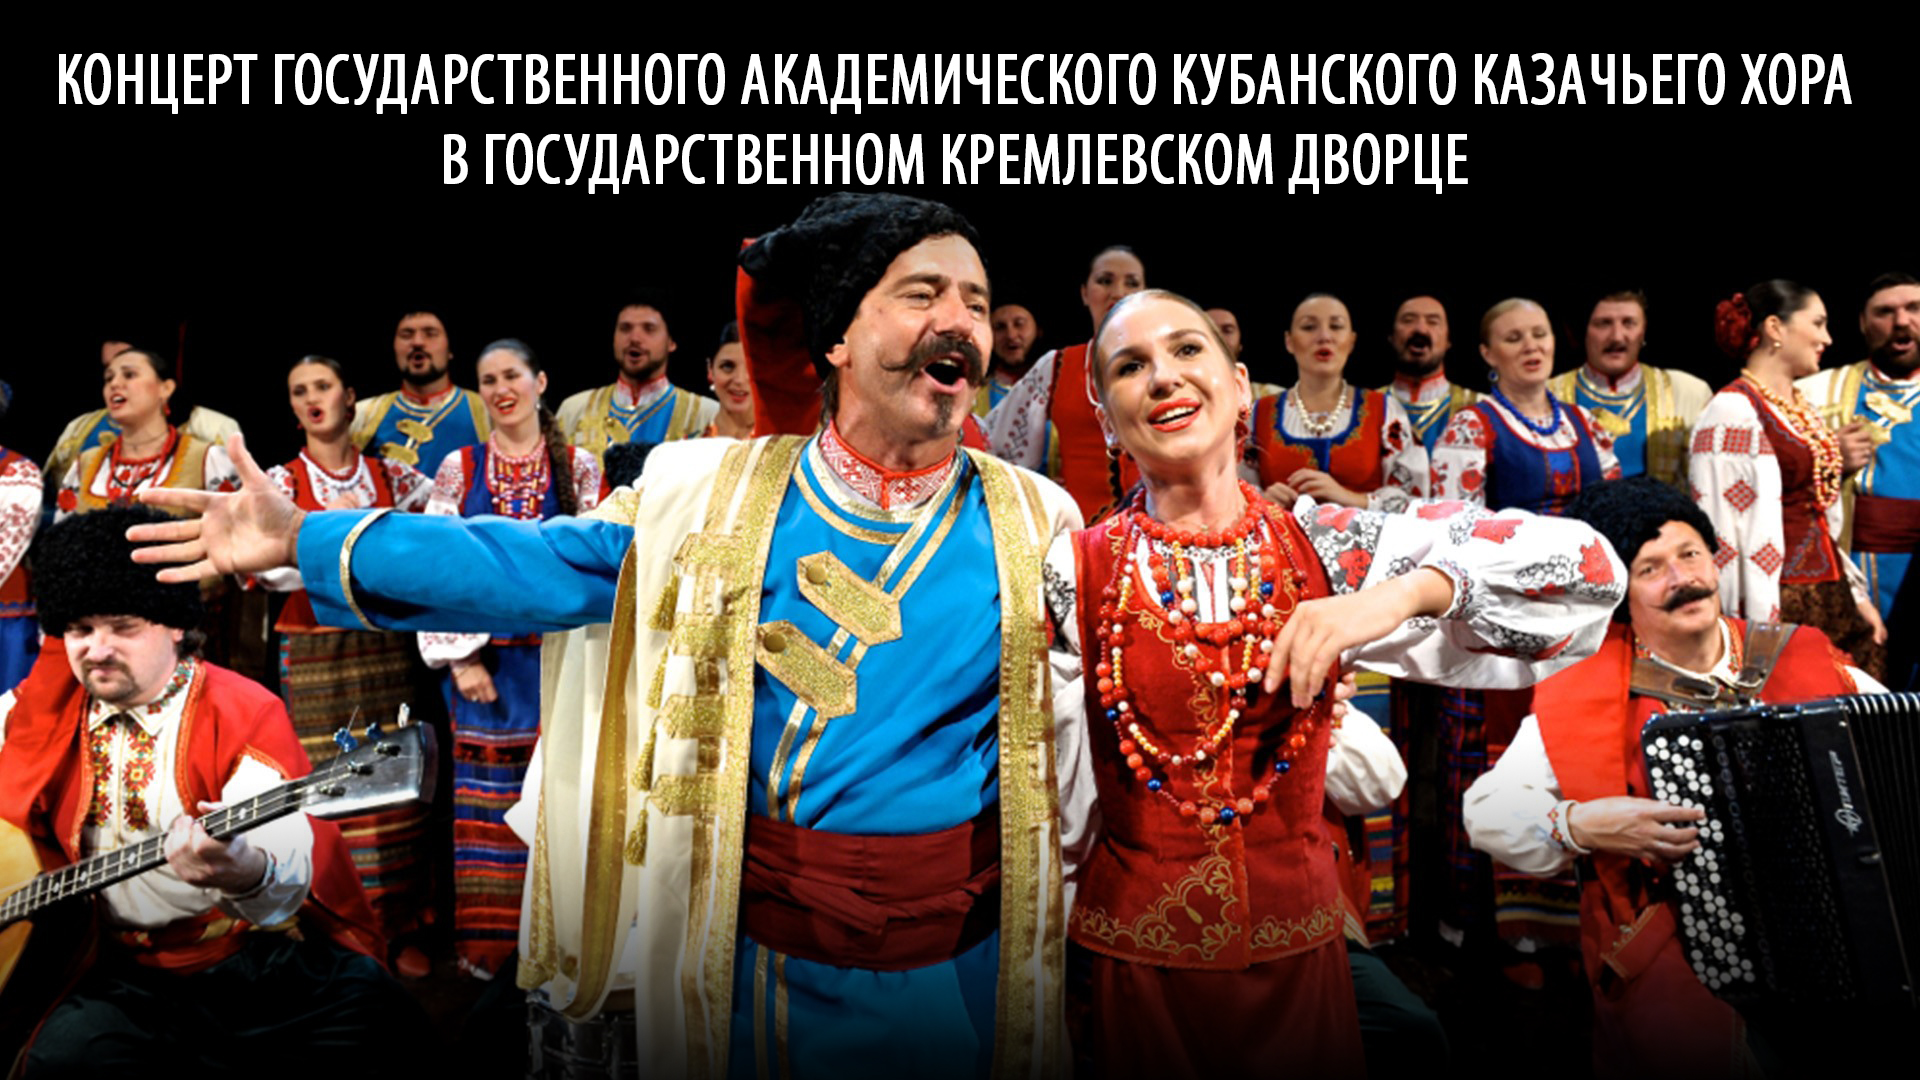 Концерт Государственного академического Кубанского казачьего хора в Государственном Кремлёвском дворце